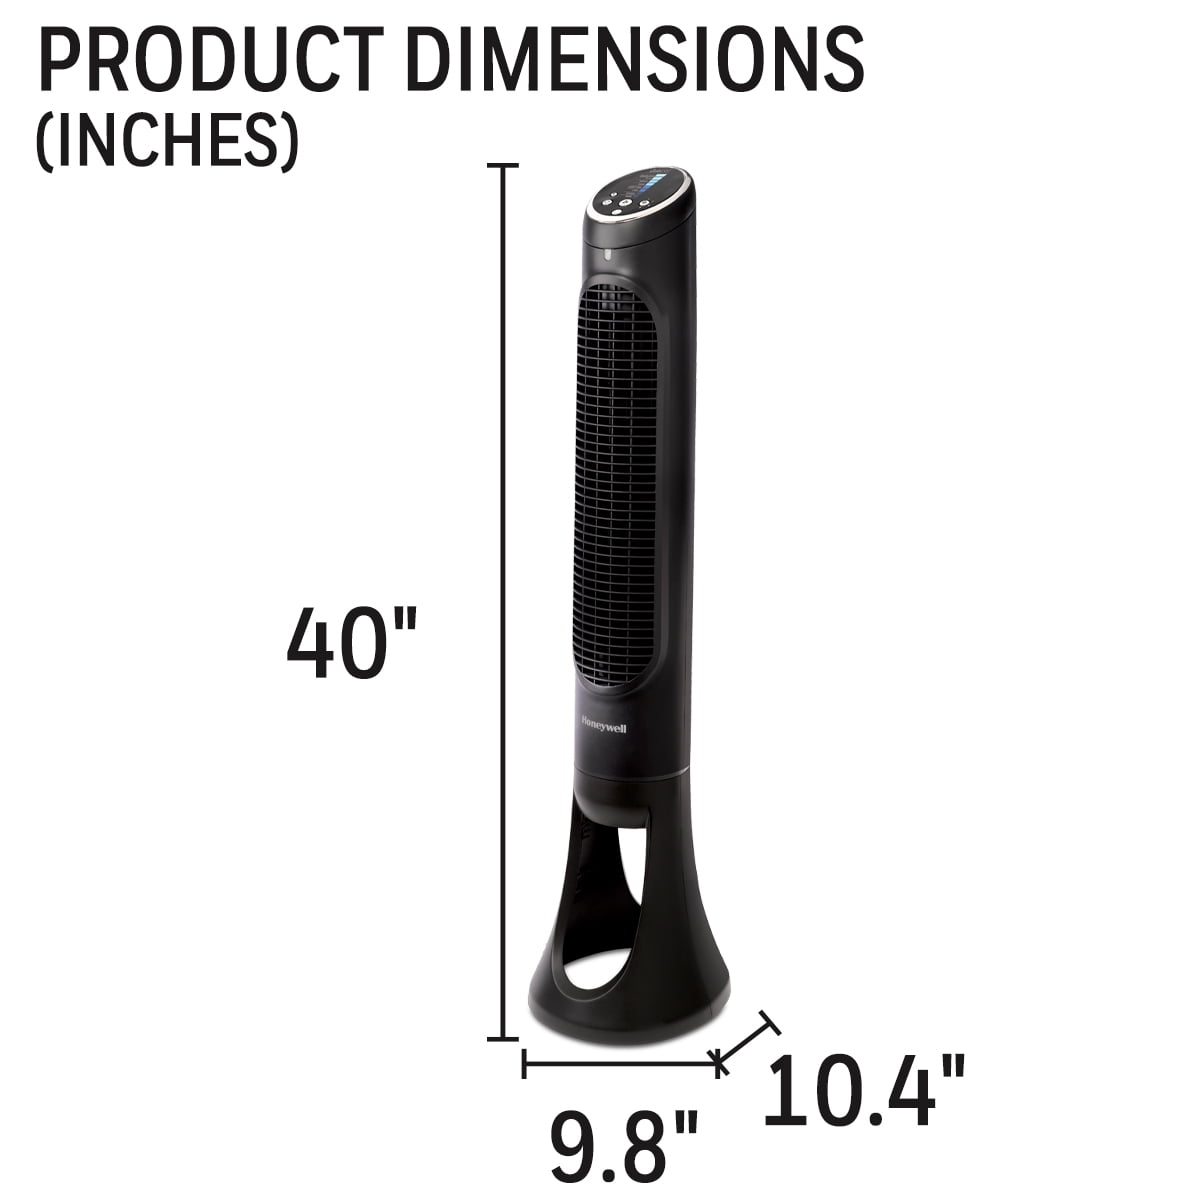 Black+Decker Digital Tower Fan Black BFTR36B - Best Buy